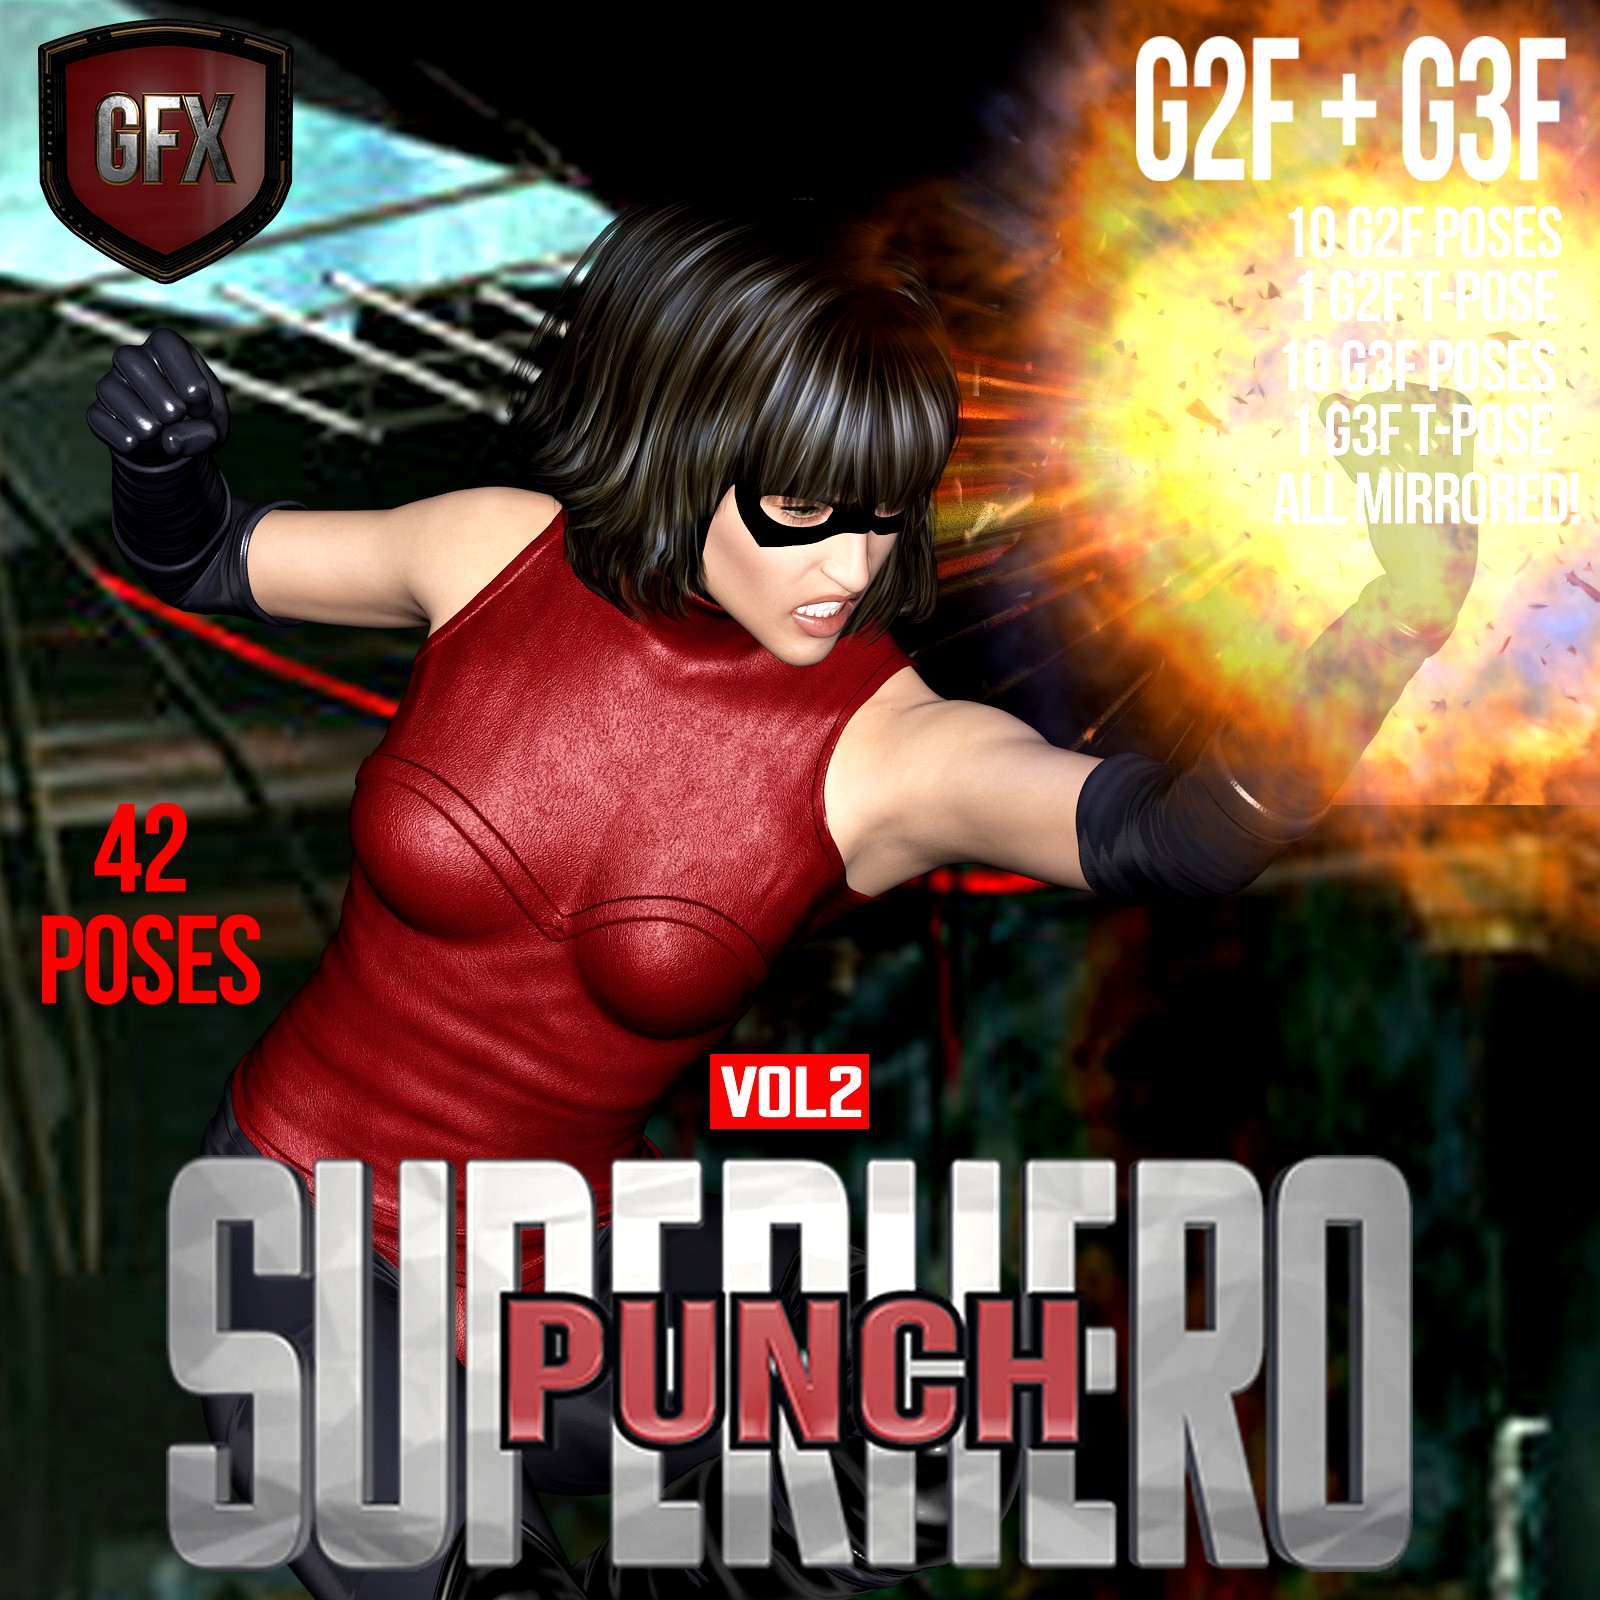 SuperHero Punch for G2F & G3F Volume 2